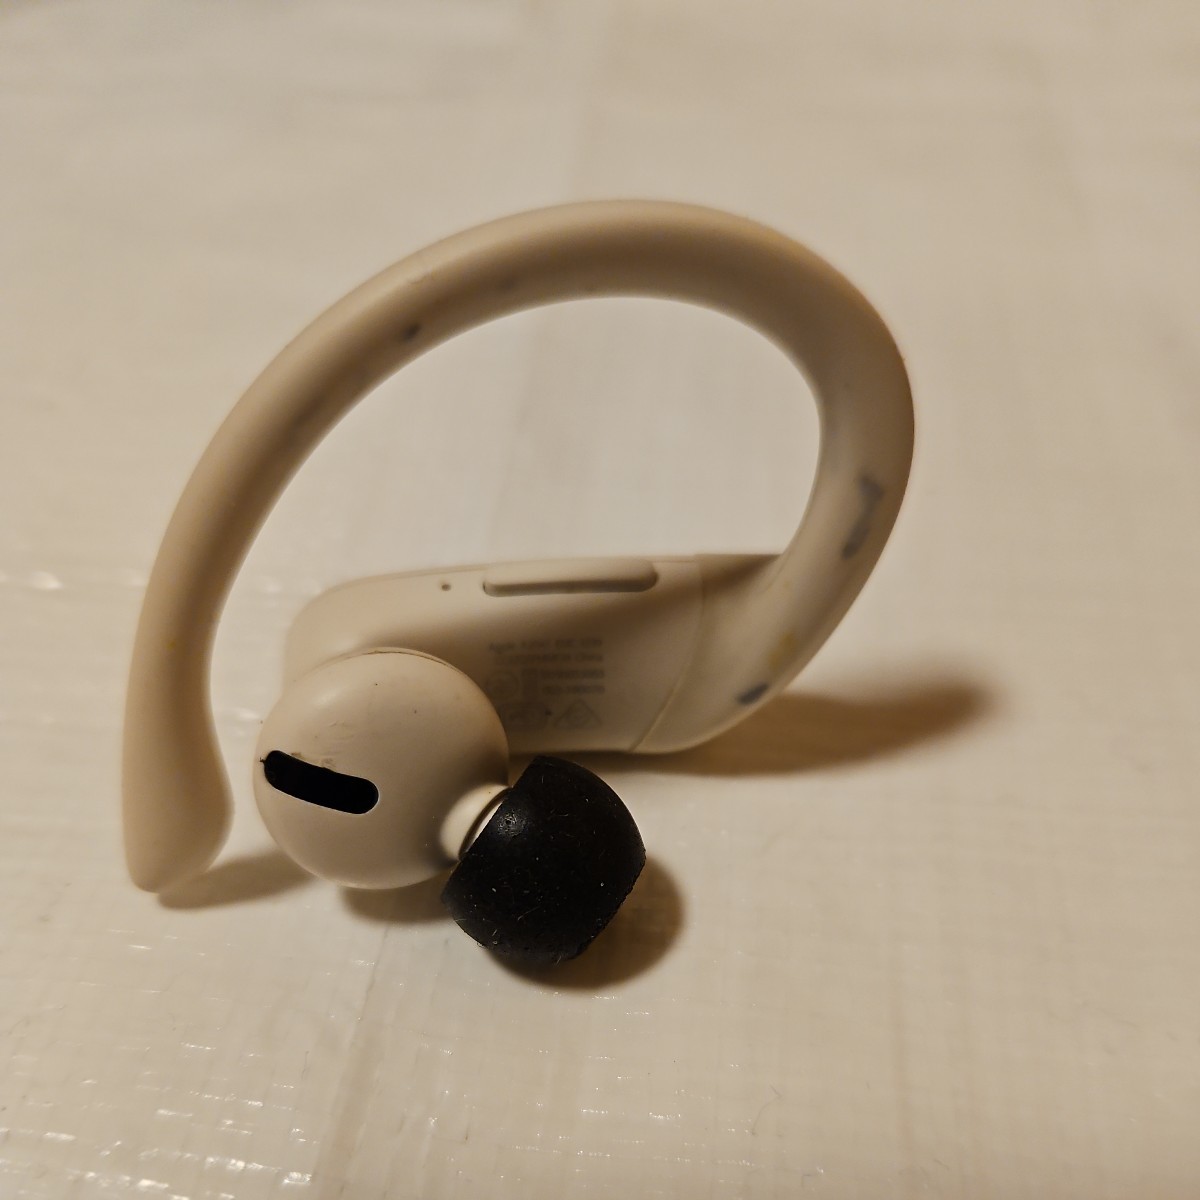 【Apple Beats Powerbeats Pro】A2047 完全ワイヤレスイヤホン ケースなし カラー3種 3個セット片耳 イヤホンのみ 通電動作未確認ジャンク_画像4